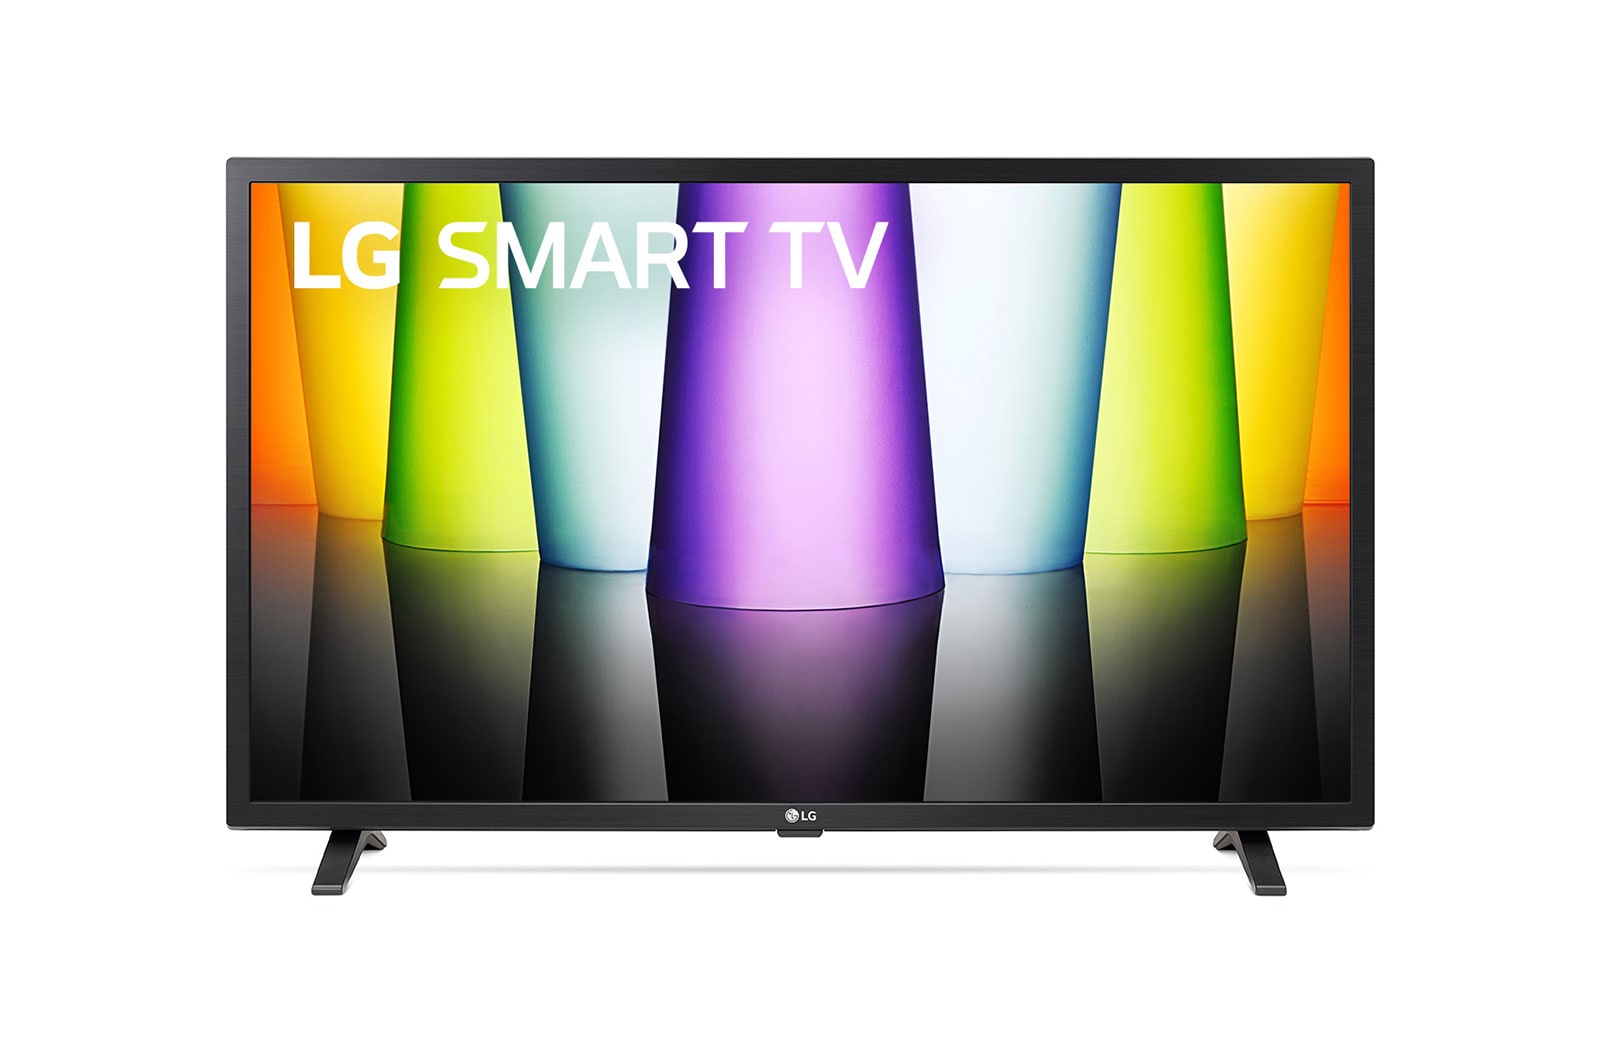 LG Telewizor LG 32"  HD TV z Active HDR AI TV ze sztuczną inteligencją, DVB-T2/HEVC, 32LQ630B, 32LQ630B6LA